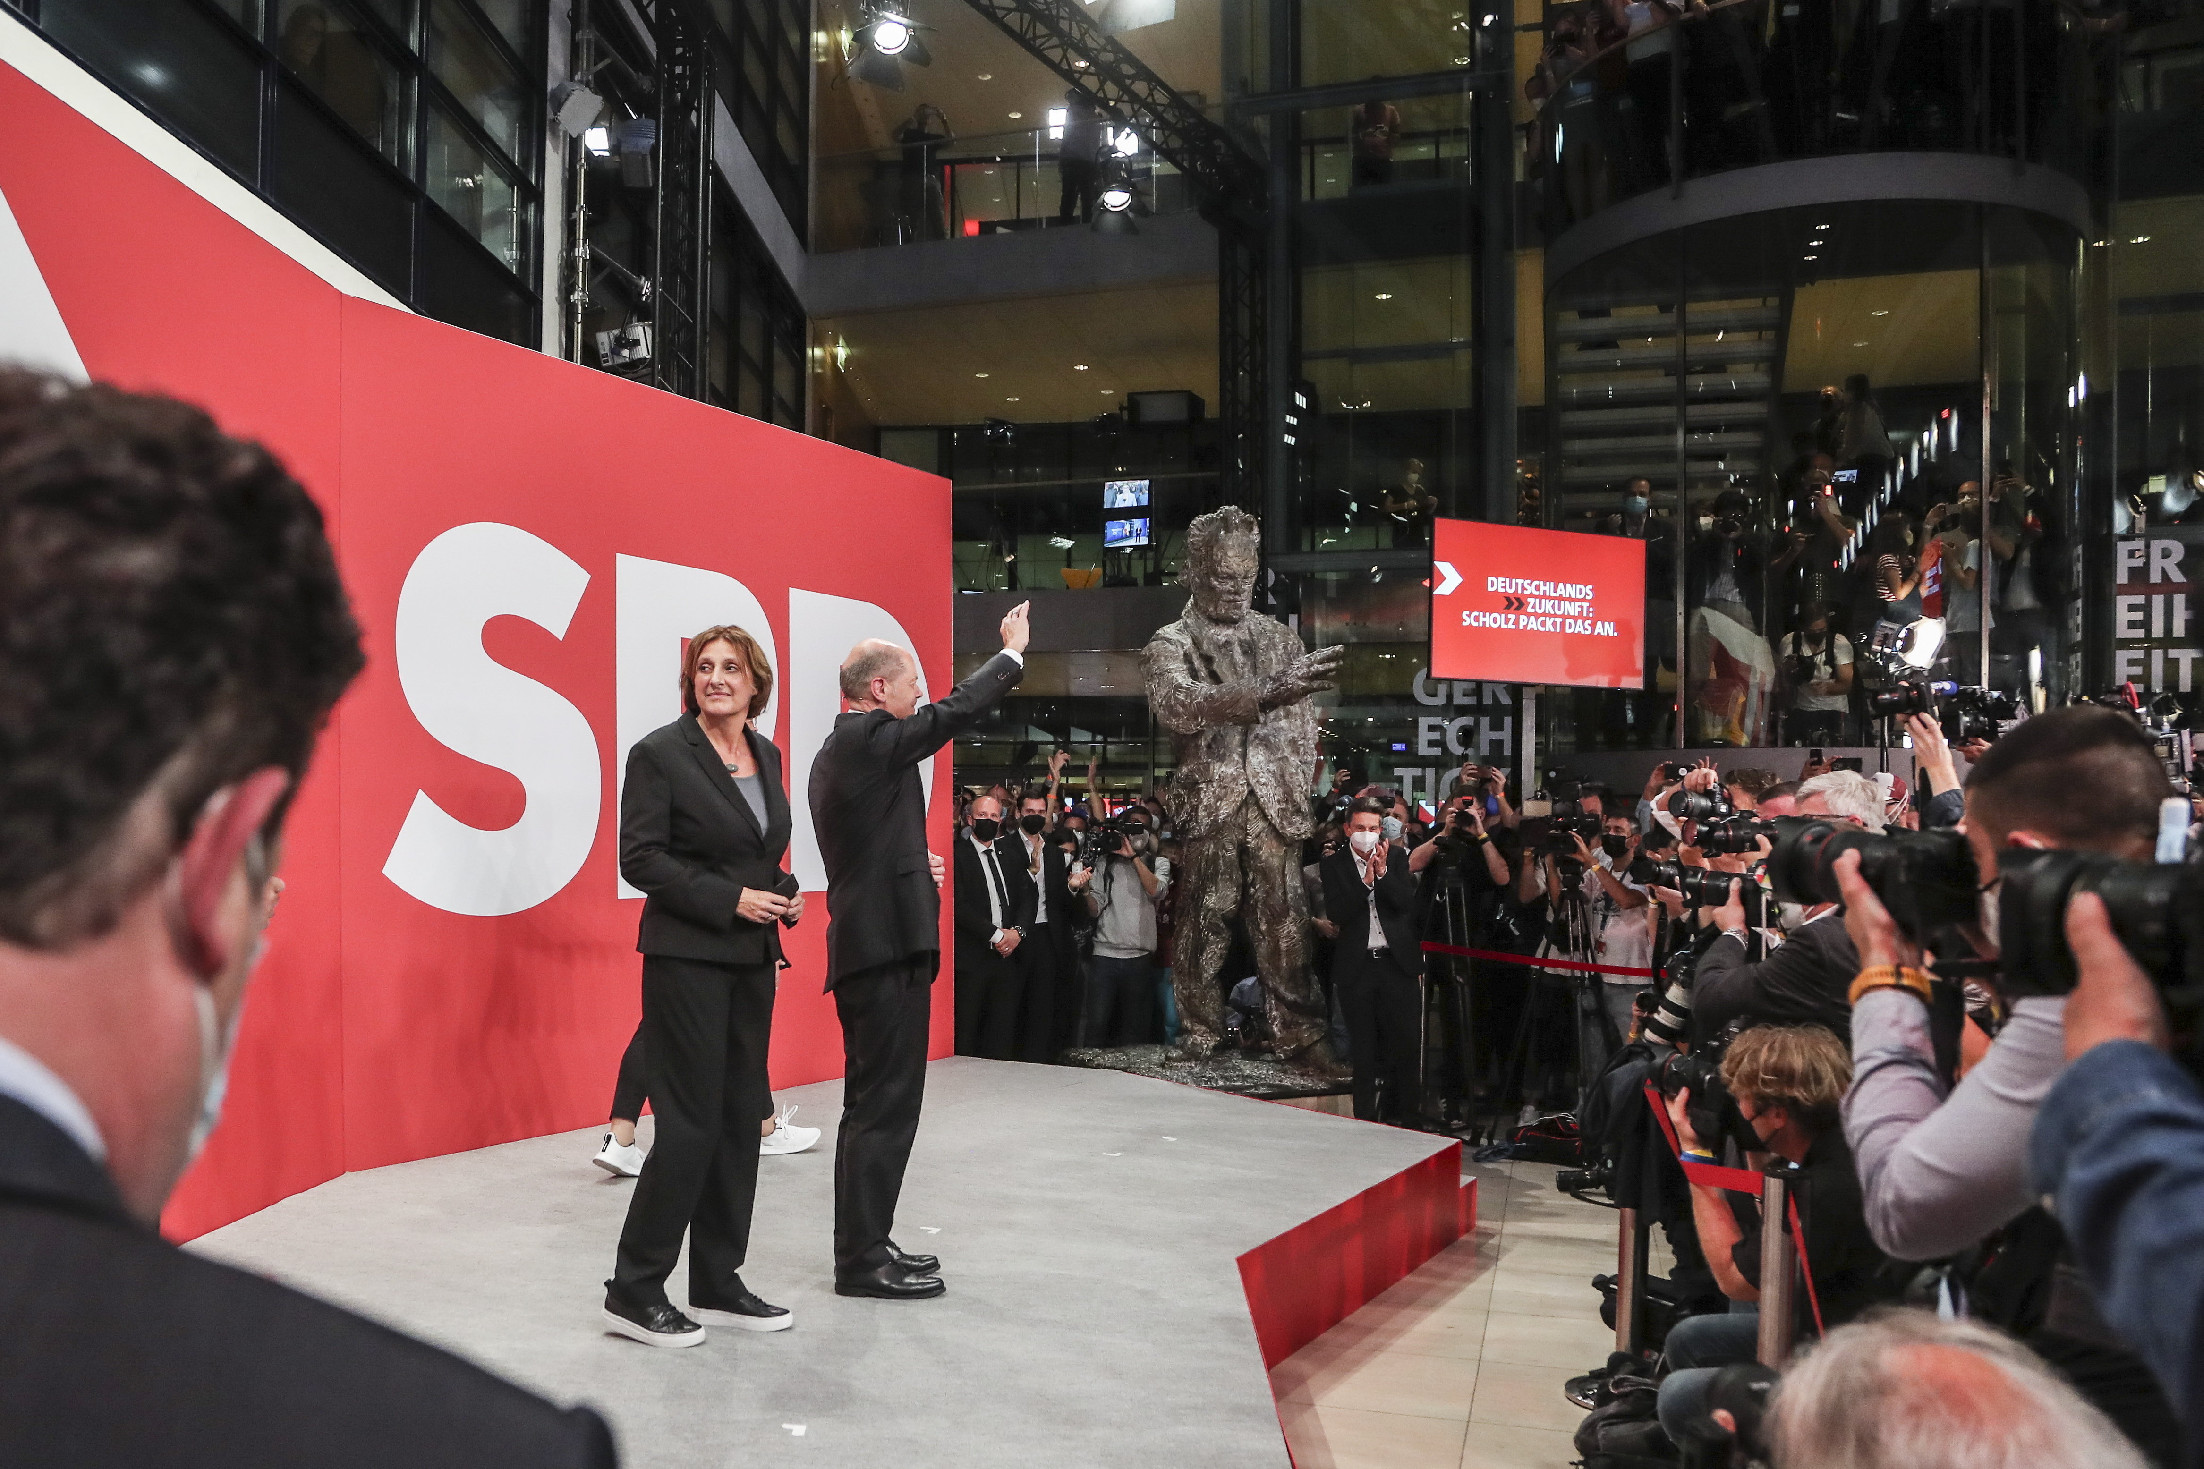 A német CDU/CSU ismét kormányalakításra készül